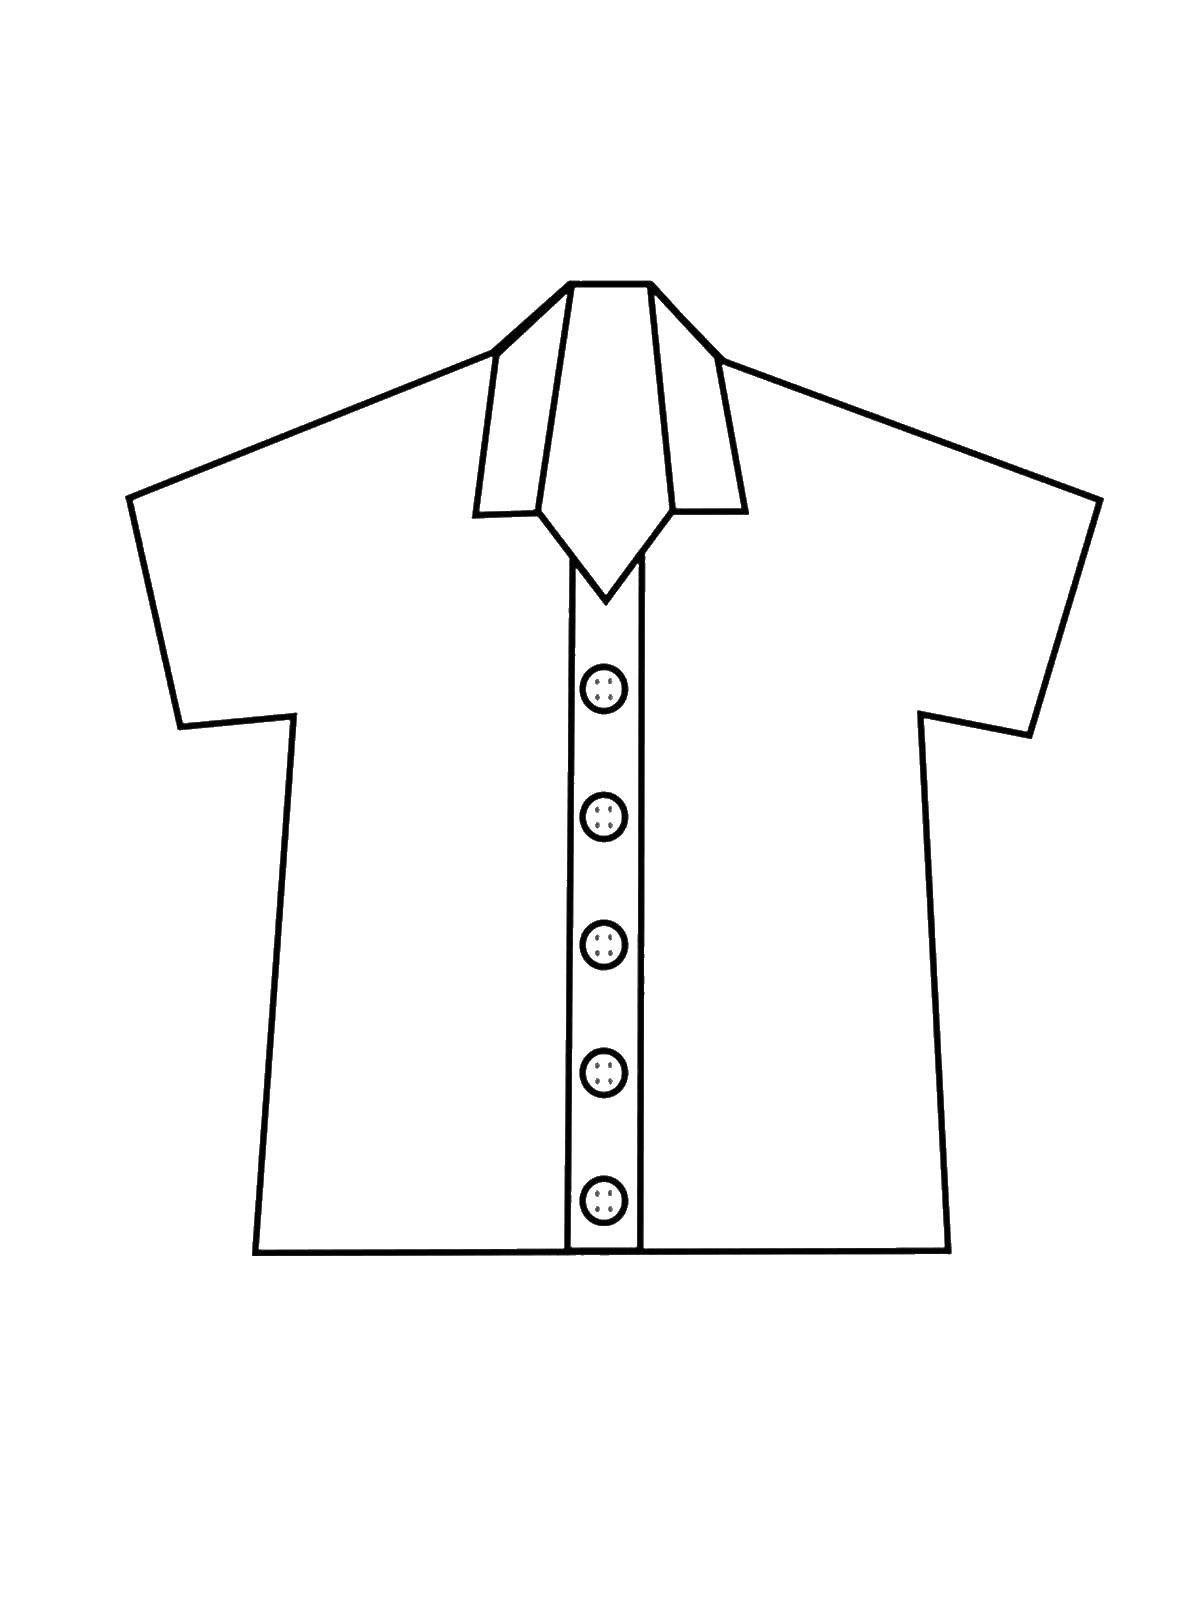 Раскраска одежда Рубашка для детей (Рубашка)